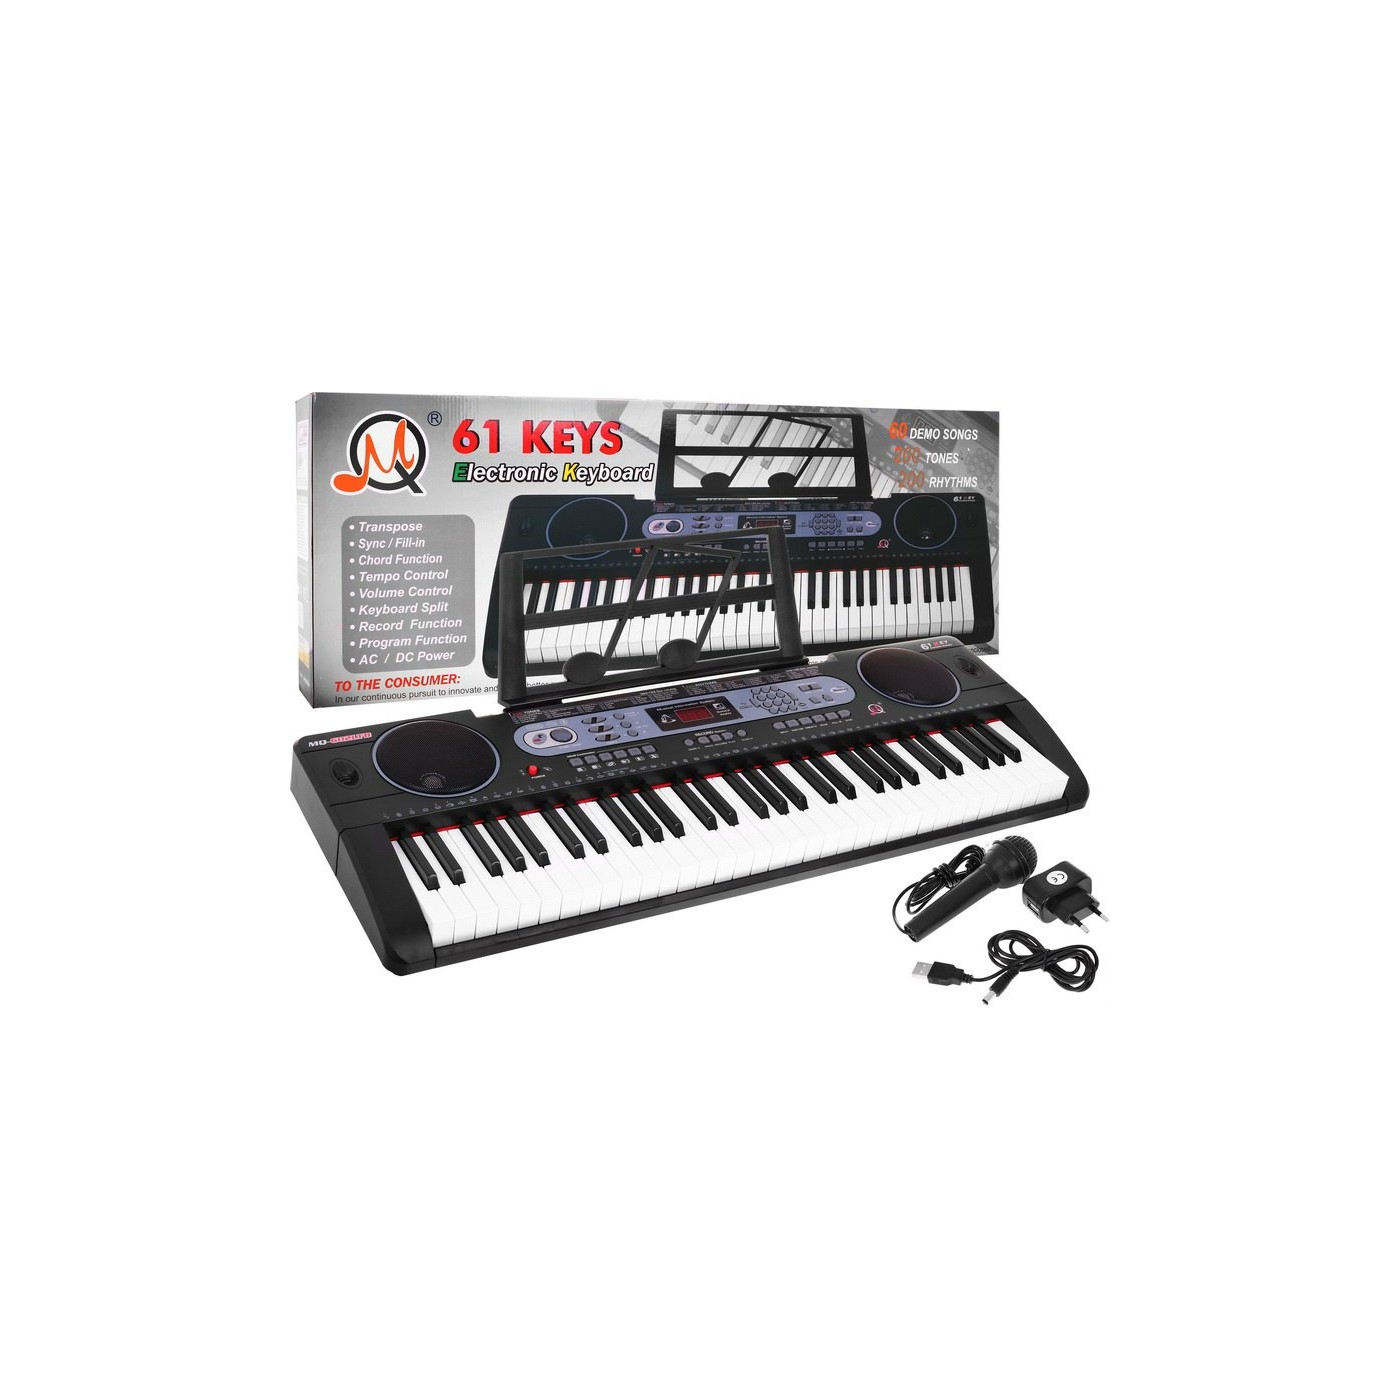 Wielofunkcyjny Keyboard dla dzieci 5+ Zestaw muzyczny Stojak na nuty Mikrofon - model nr 602